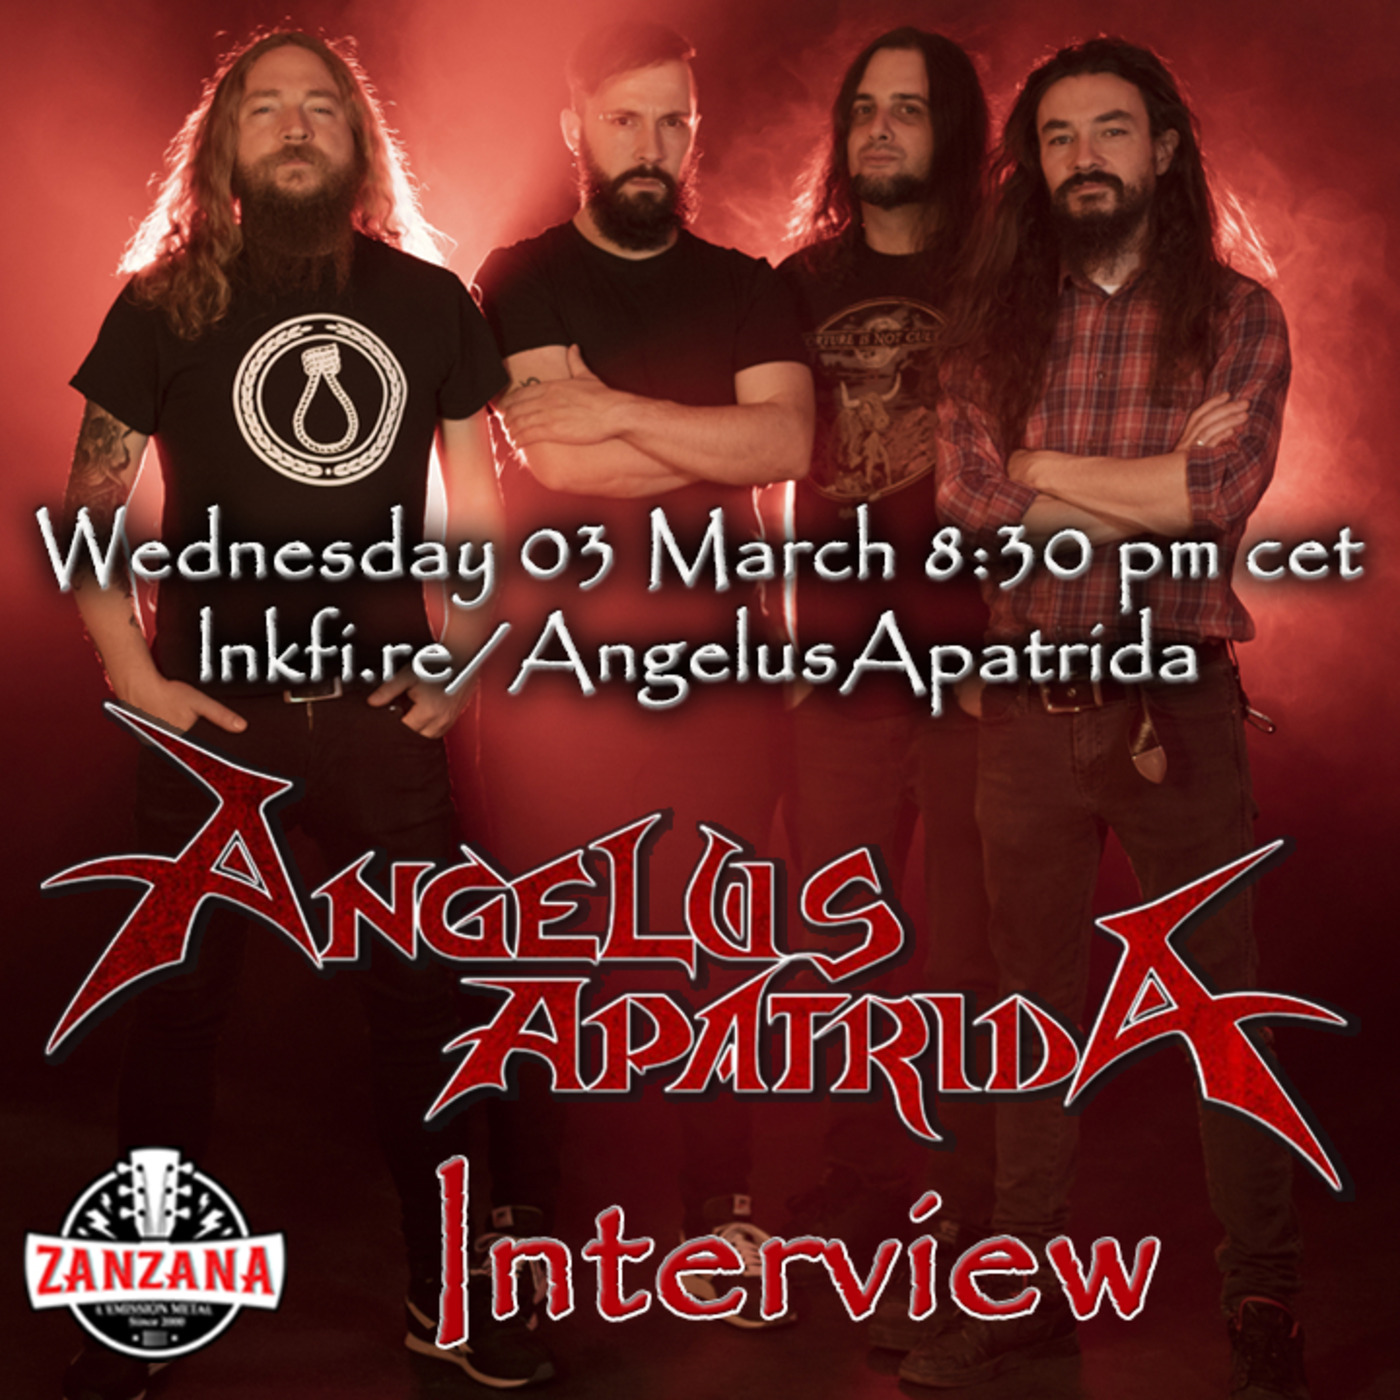 ANGELUS APATRIDA, Guillermo Izquierdo interview about ”Angelus Apatrida” - ZanZanA Live Stream Metal Interviews - wednesday March 3, 2021